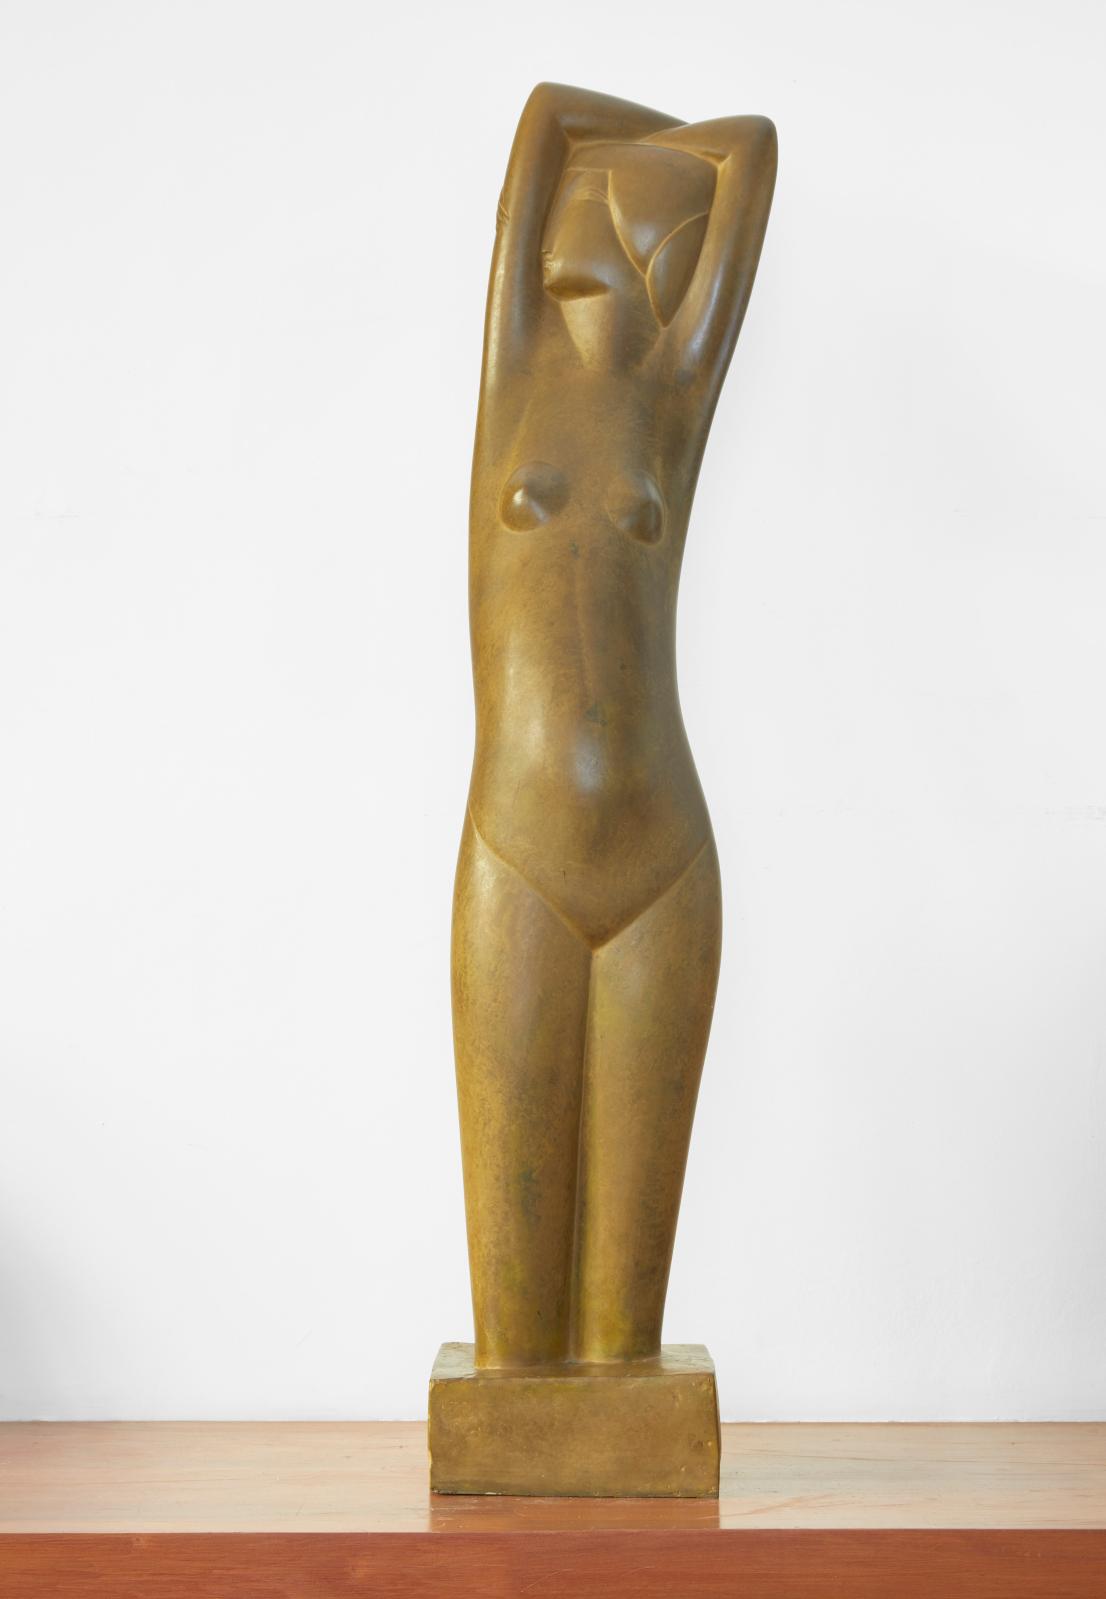 Torse, 1912, bronze patiné, 123 cm.